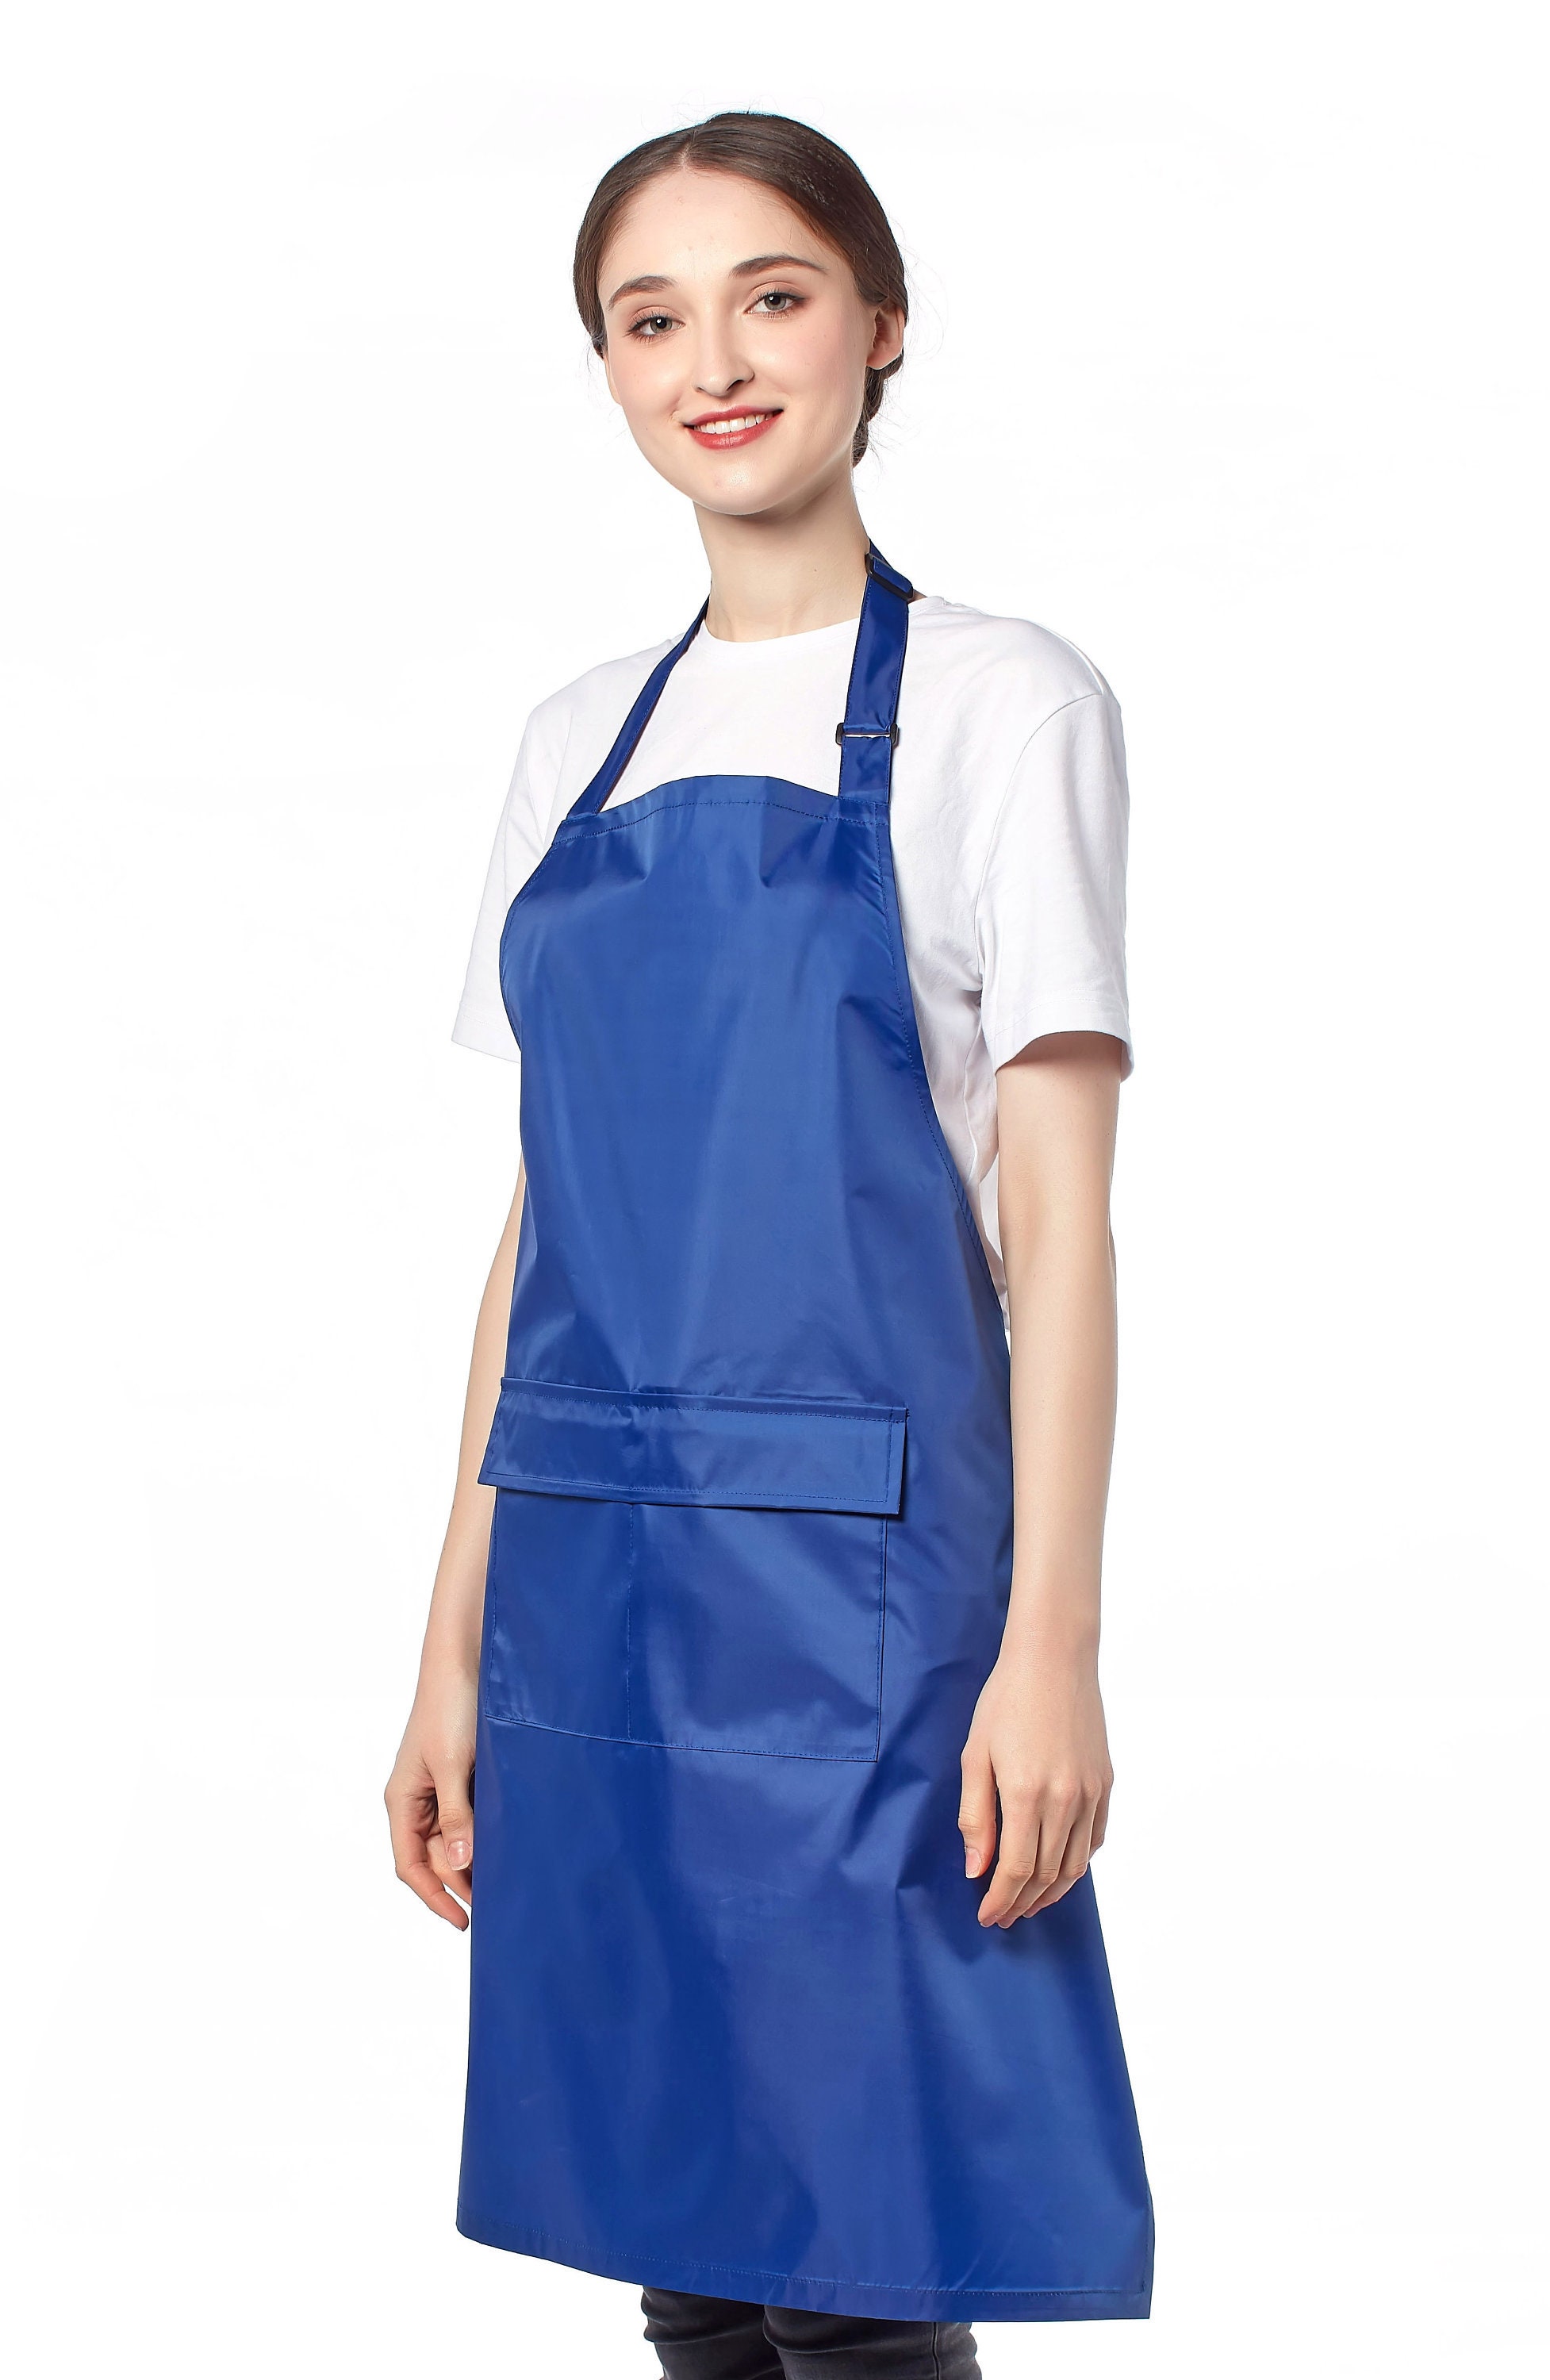 Tablier plastique PVC pour femme de cuisine professionnel blanc en PVC  femme menage hôtel entretien cuisine, VP353